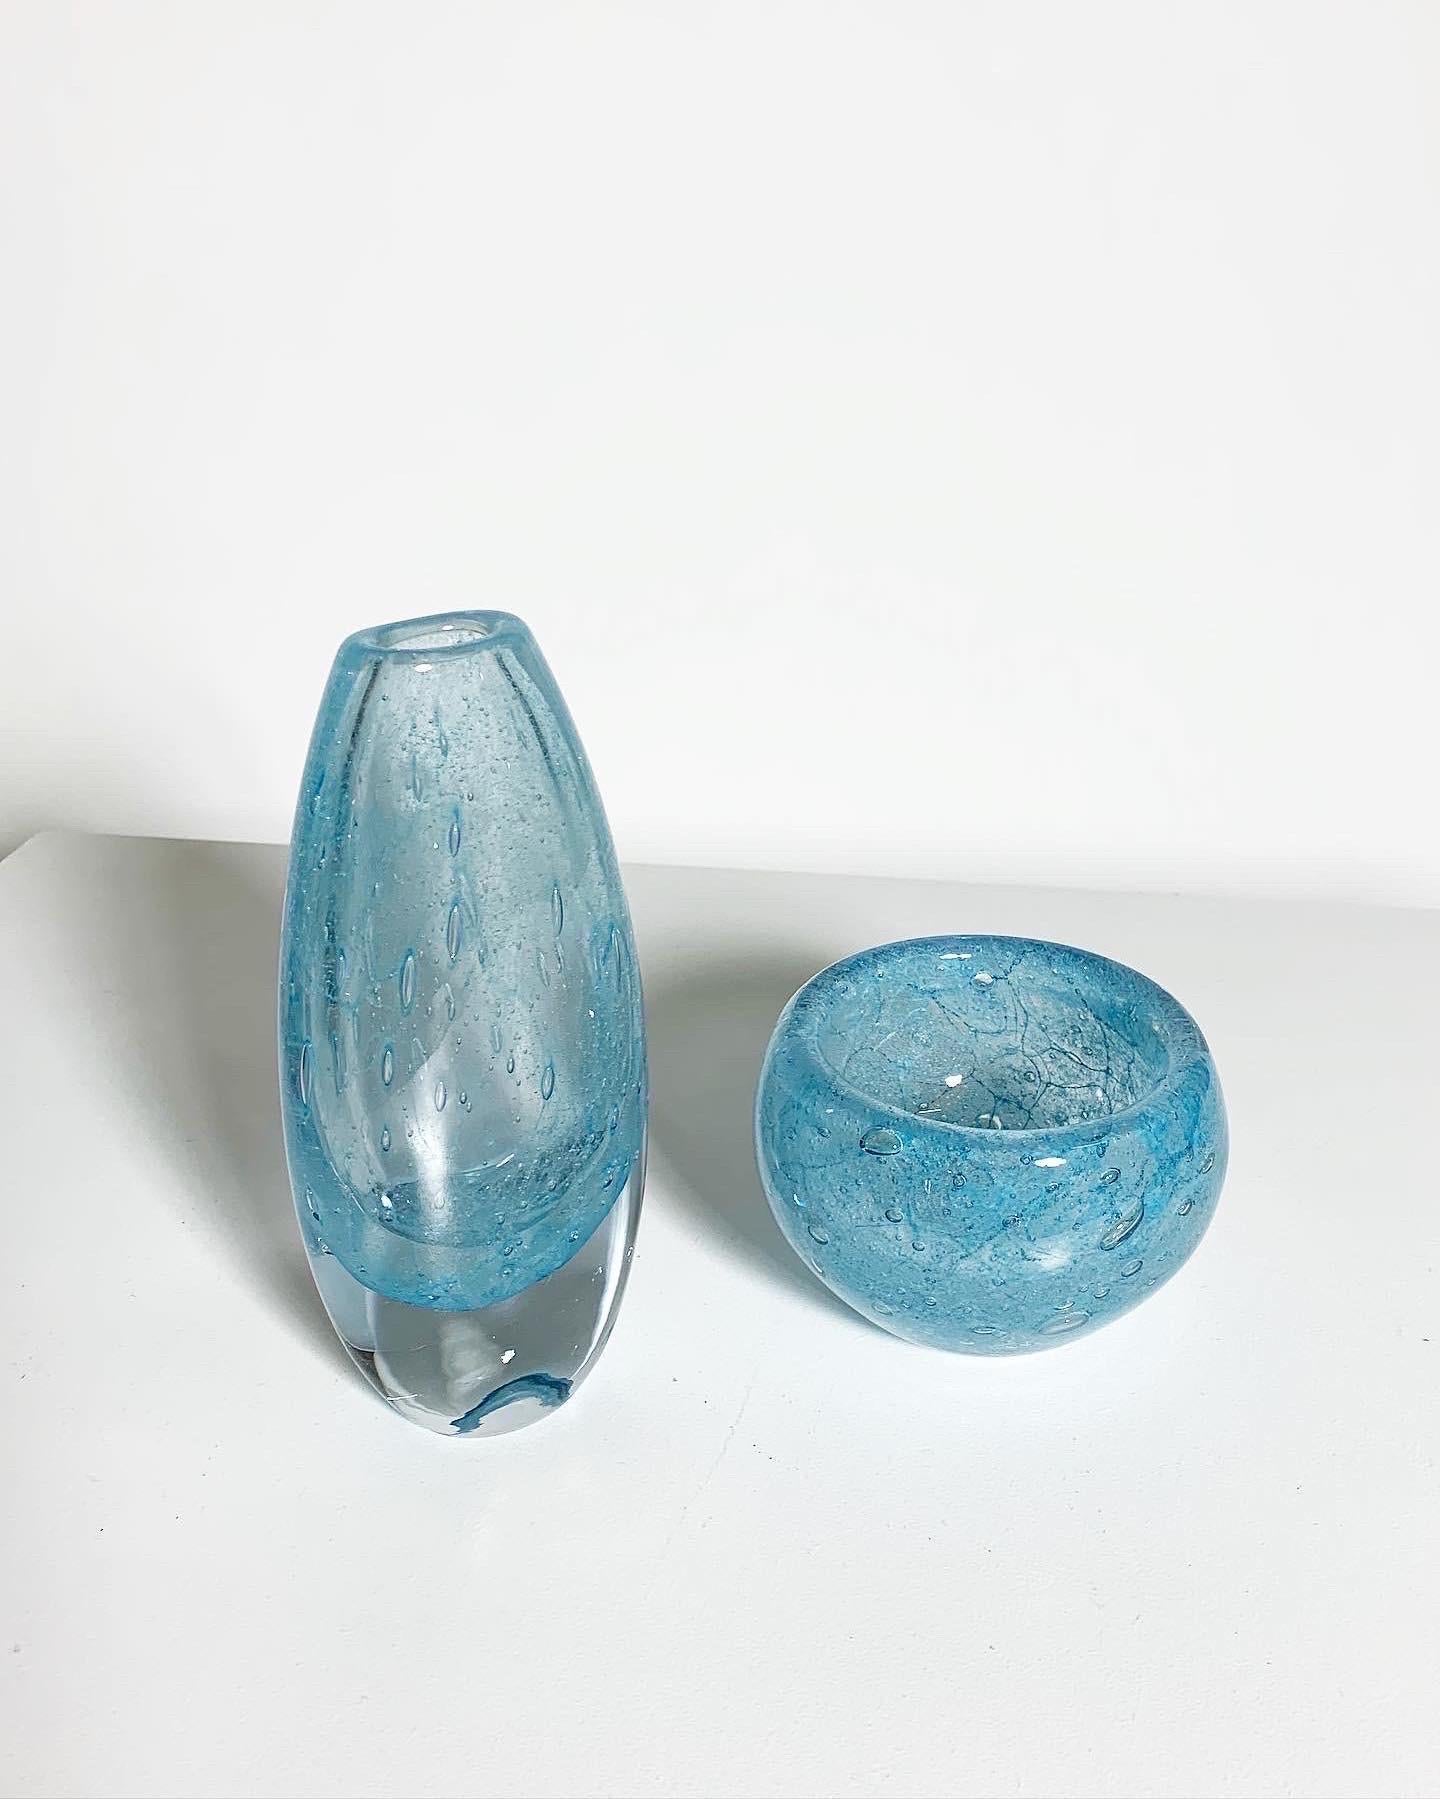 La forme de ces deux modèles a été conçue par Gunnar Nylund pour Strömbergshyttan en Suède, mais la technique de la bulle bleue a été développée par Asta Strömberg et introduite par Strömbergshyttan au début des années 1970.

Vase
Hauteur : 21,5